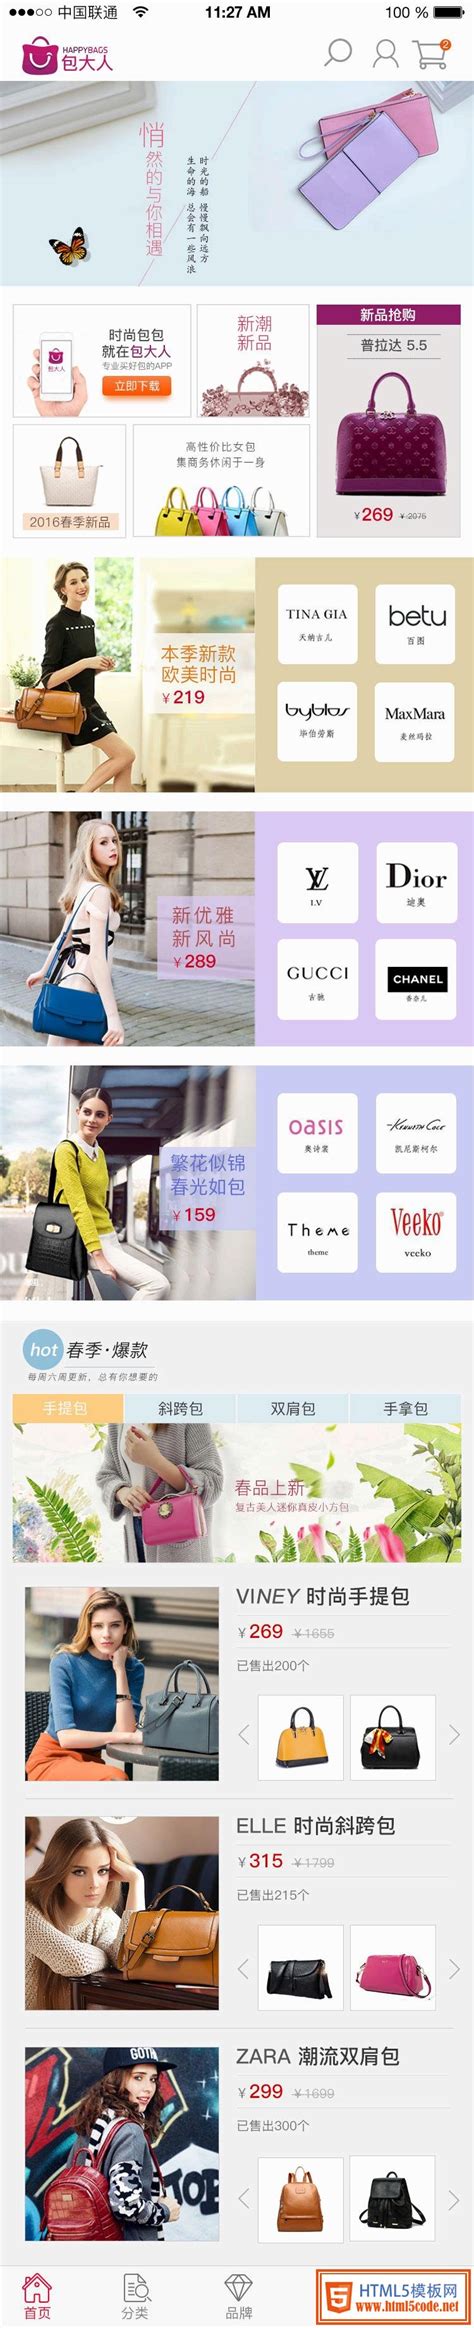 时尚包包购物商城网站APP界面设计模板_html5实例-html5模板网